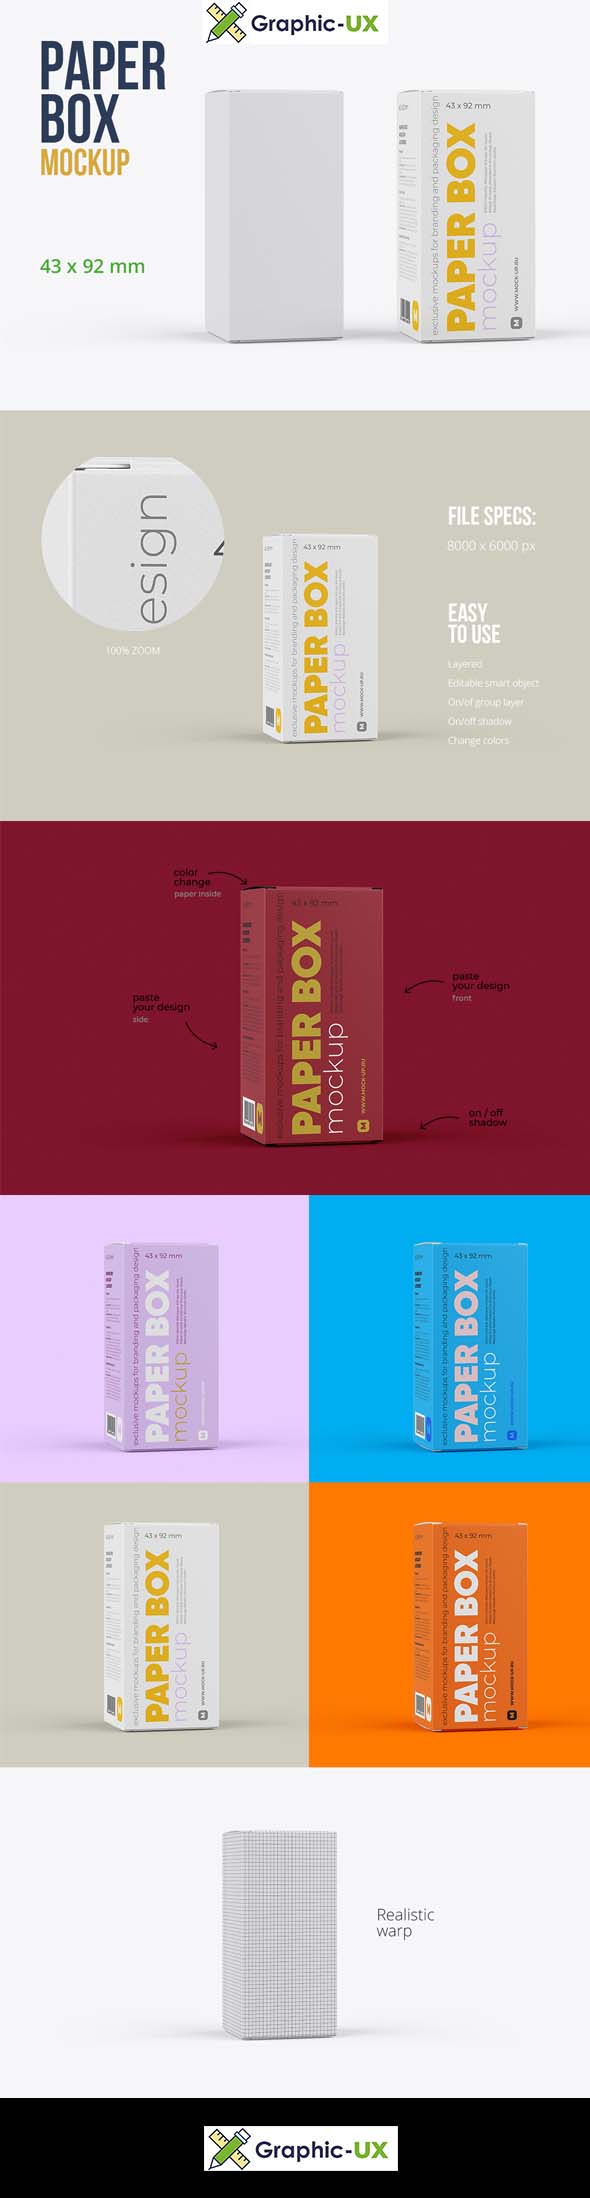 Paper Box Mockup 43x92mm